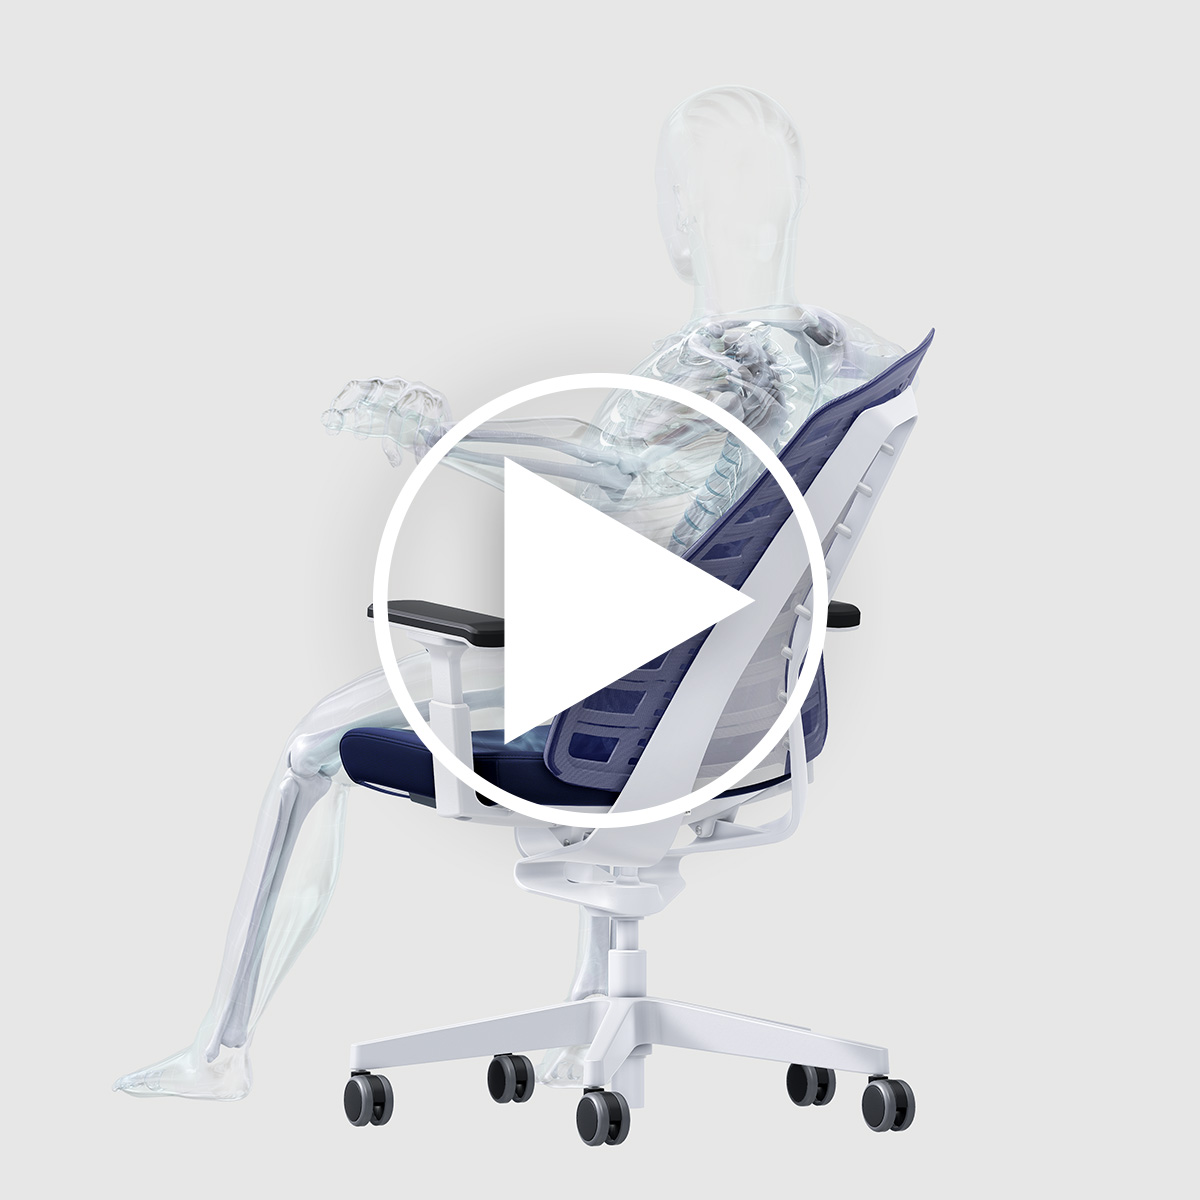 Vidéo représentant les trois facteurs favorisant la santé et ergonomiques par le biais d'un homme assis sur un siège de bureau PURE.